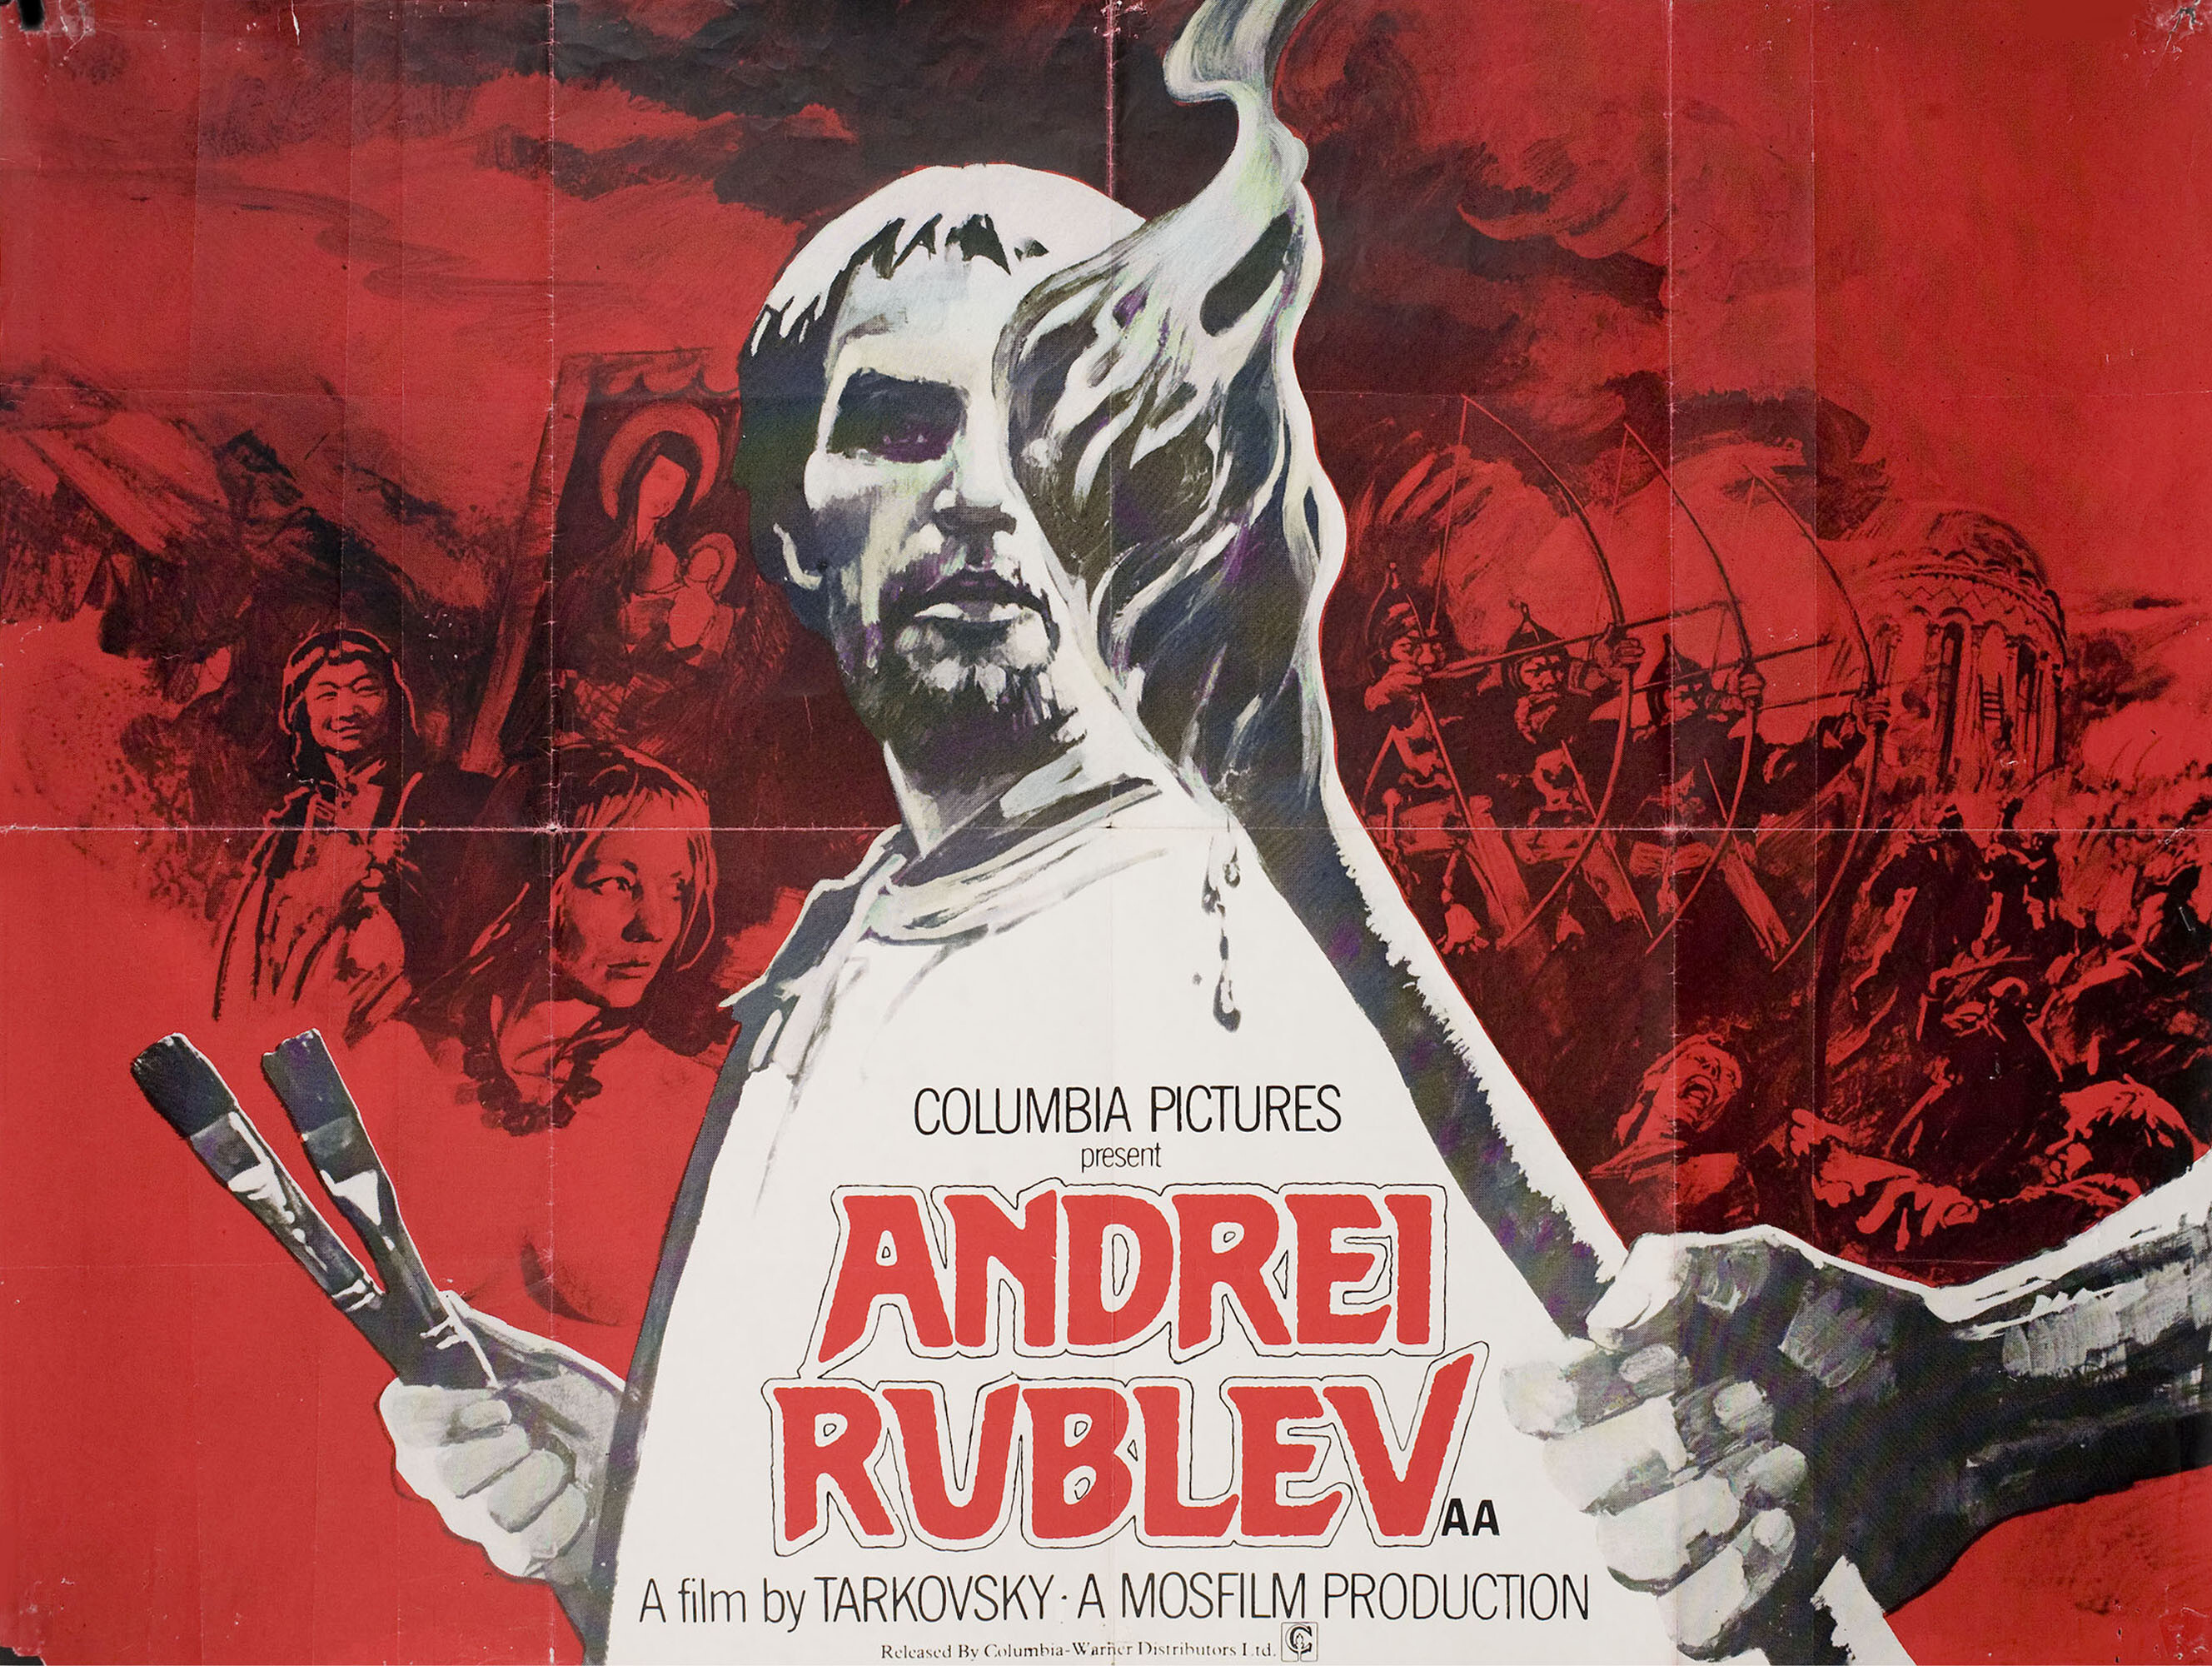 Андрей Рублёв (Andrei Rublev, 1966), режиссёр Андрей Тарковский, художественный постер к фильму (Британия, 1969 год)